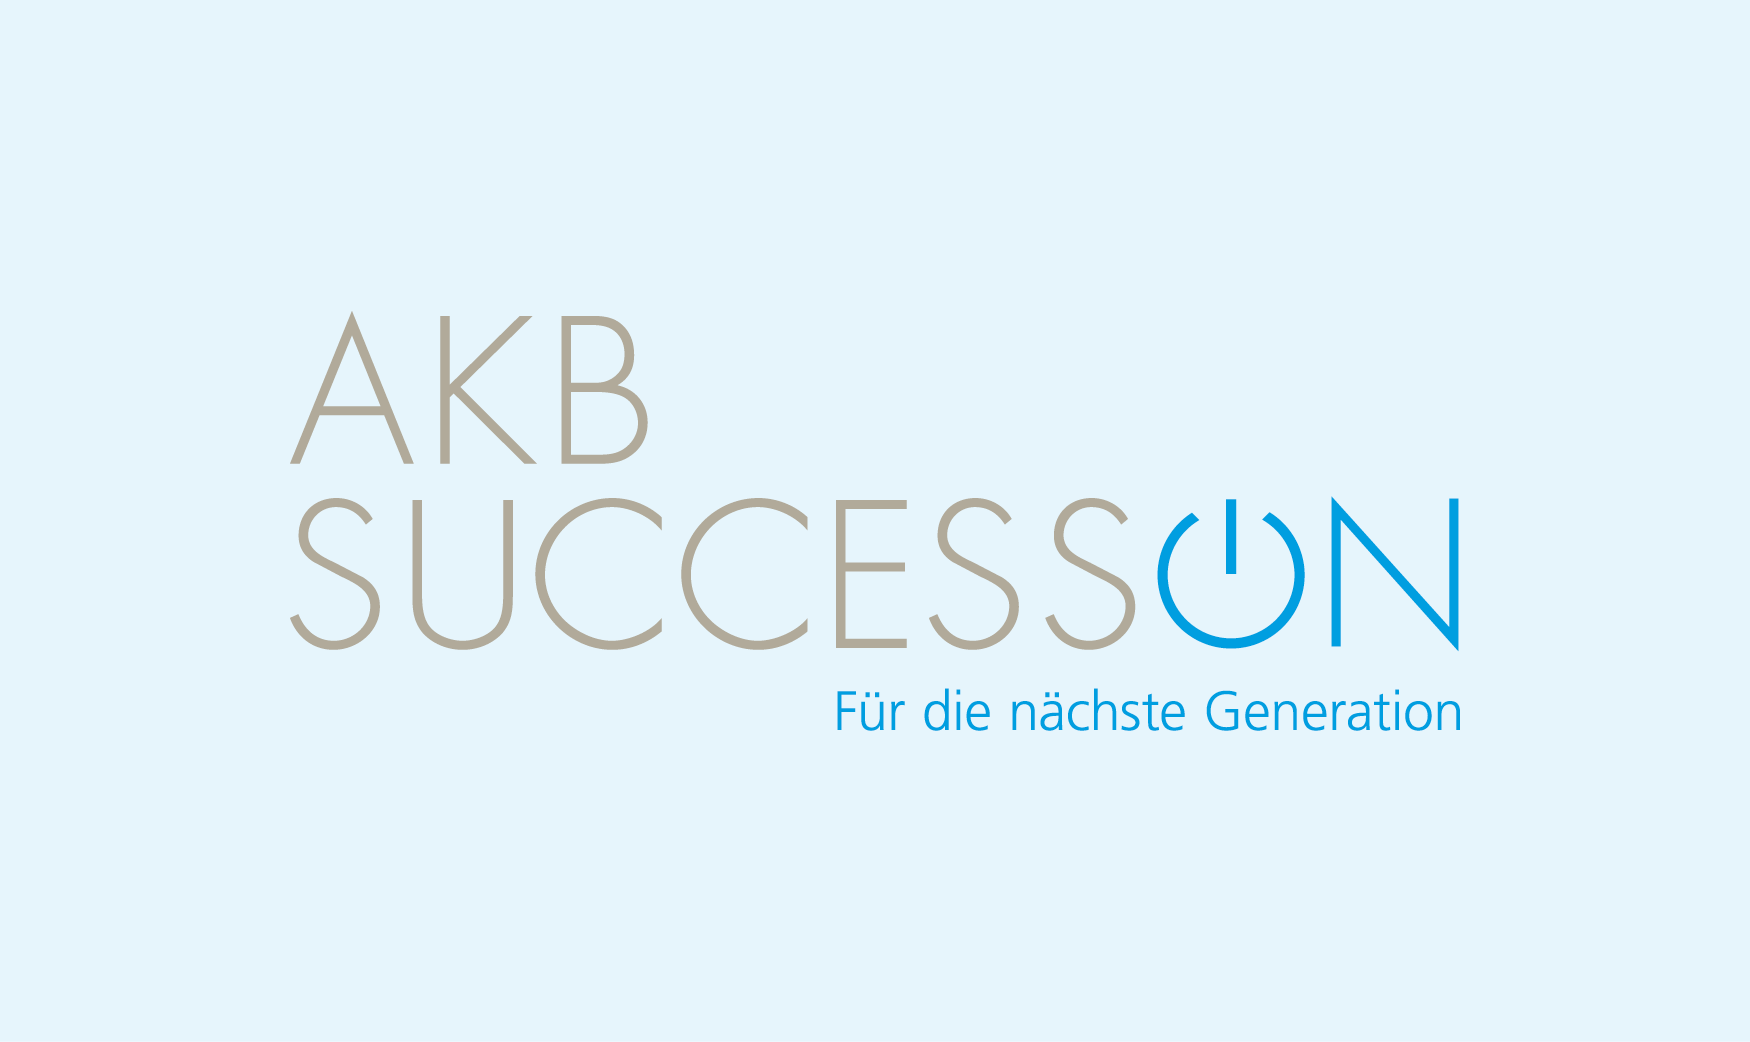 AKB Succession Lunches mit Erfahrungsberichten von Nachfolgerinnen und Nachfolgern zu ihren vollzogenen Unternehmensnachfolgen